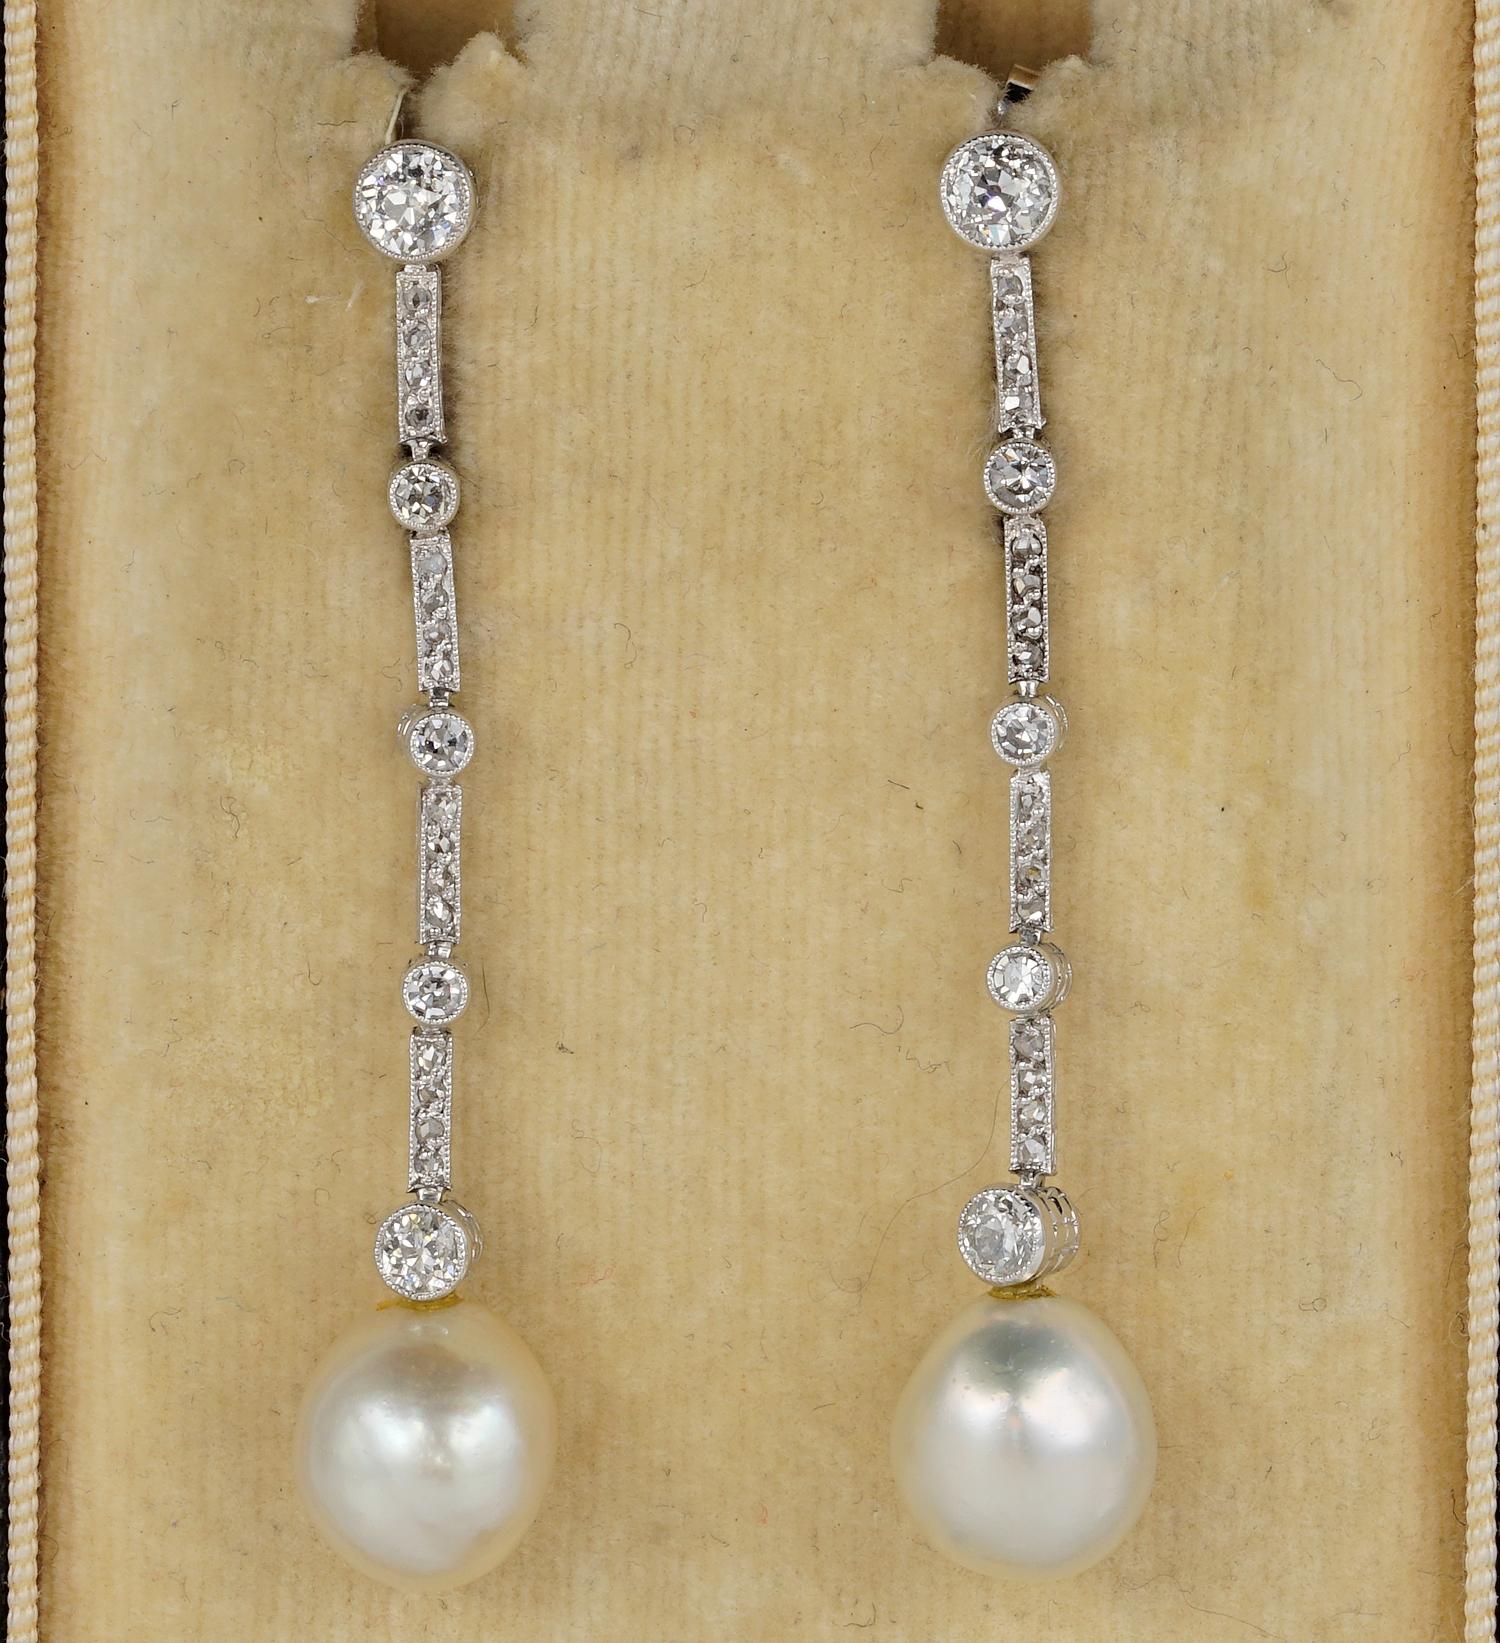 Dieses außergewöhnliche Paar Ohrringe stammt aus der Edwardianischen Periode, 1905 ca.
Handgefertigt aus massivem Platin
Langes, schlankes Design, ausgedrückt durch eine lange Reihe von Diamanten und hängenden Perlen
Set mit 1,20 Karat Diamanten im